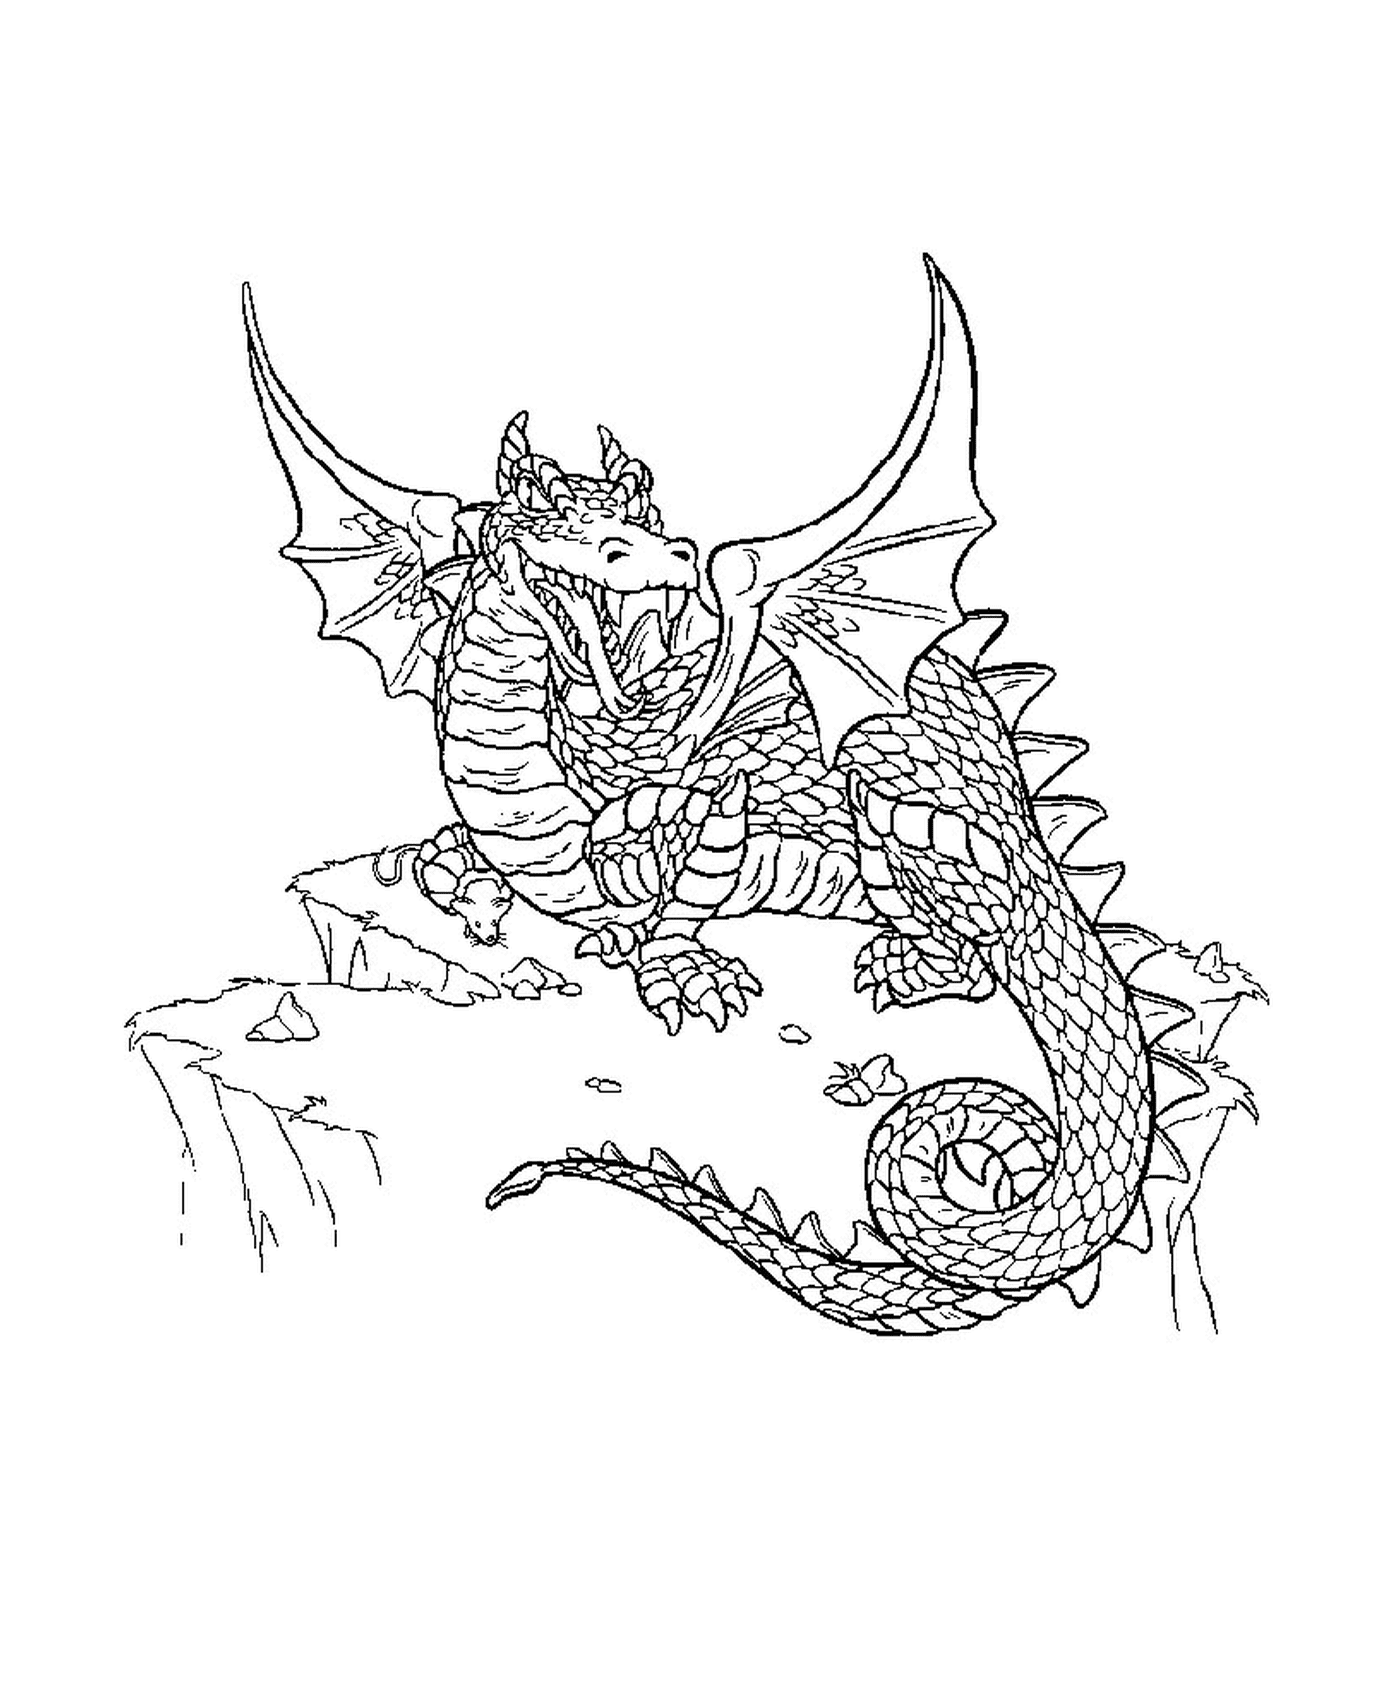  Um dragão empoleirado em um penhasco 